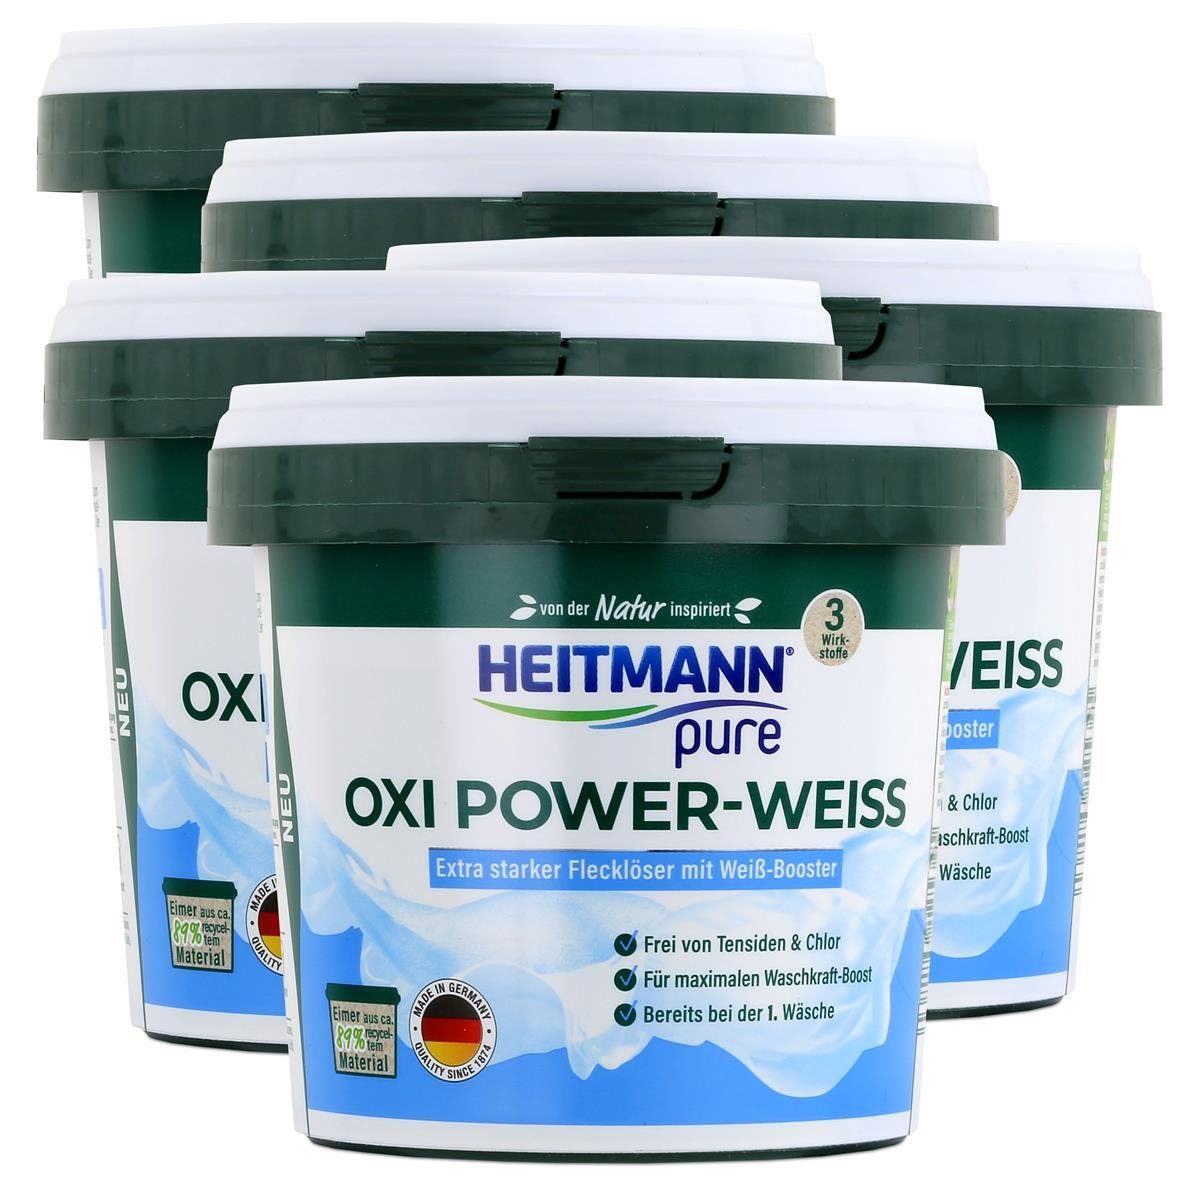 mit - Heitmann Power-Weiss Vollwaschmittel Flecklöser 500g Weiß-Booster Oxi pure (5er HEITMANN